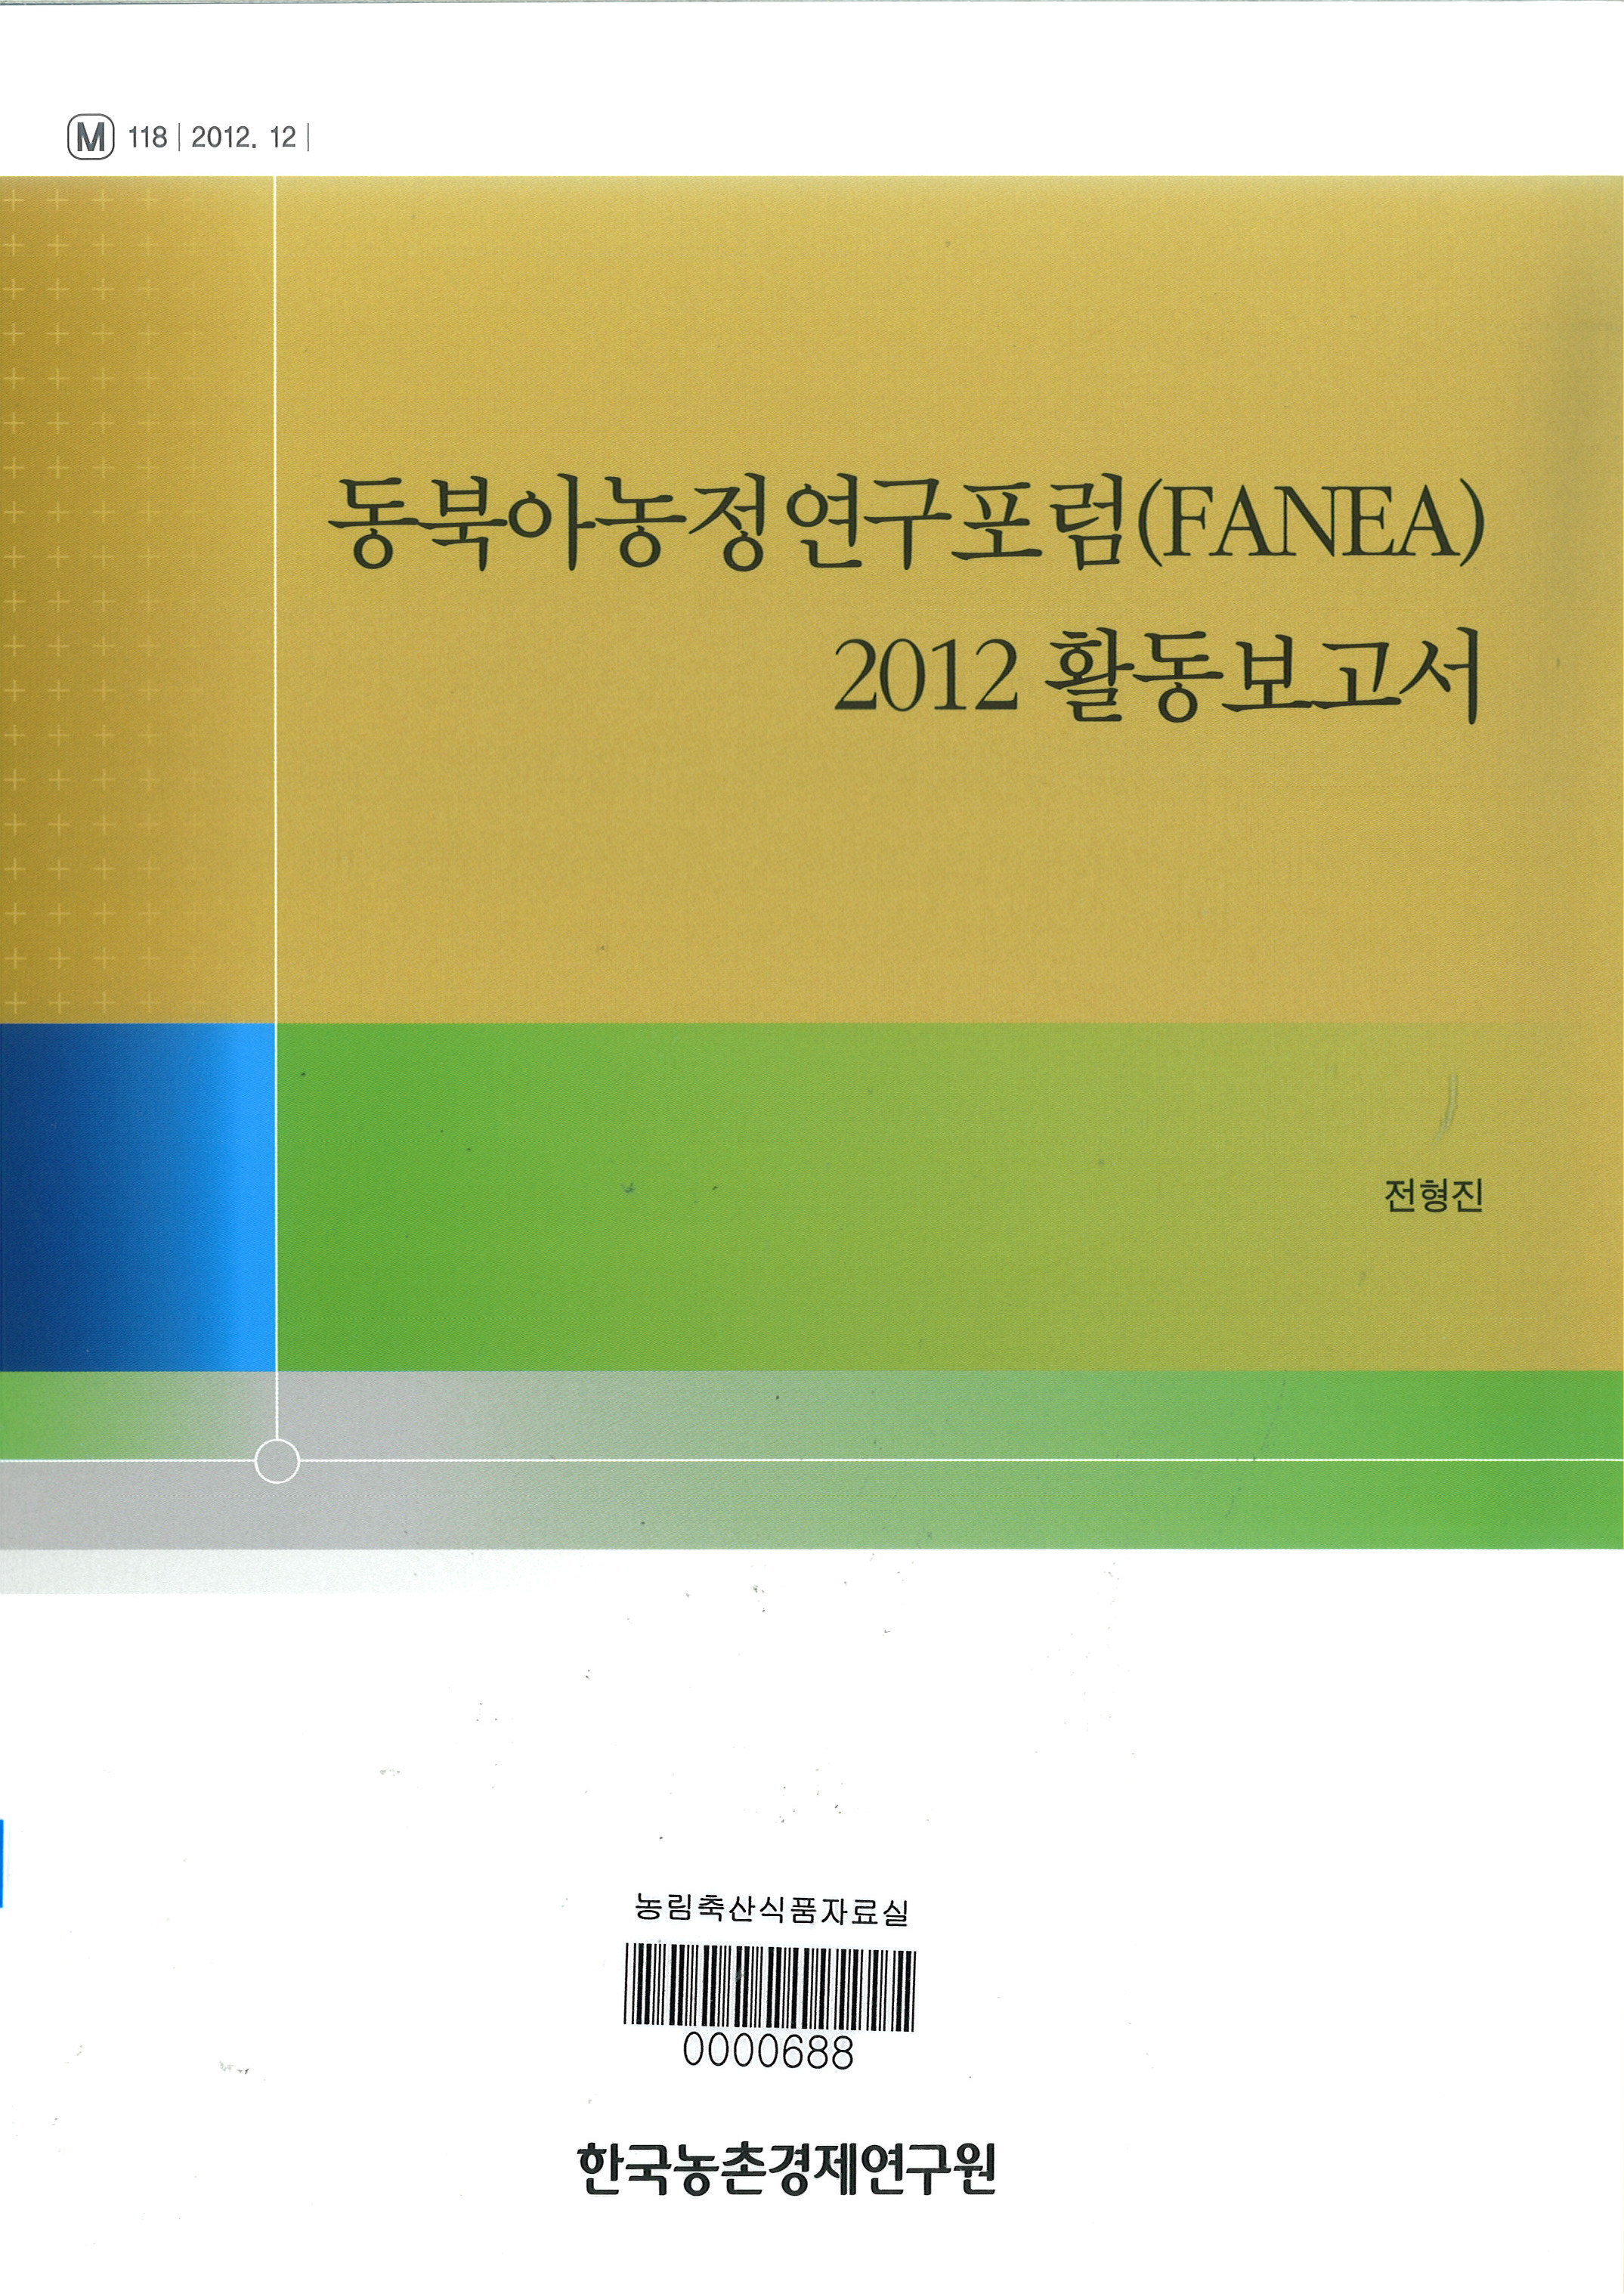 동북아농정연구포럼(FANEA) 2012 활동보고서 / 전형진 [저]